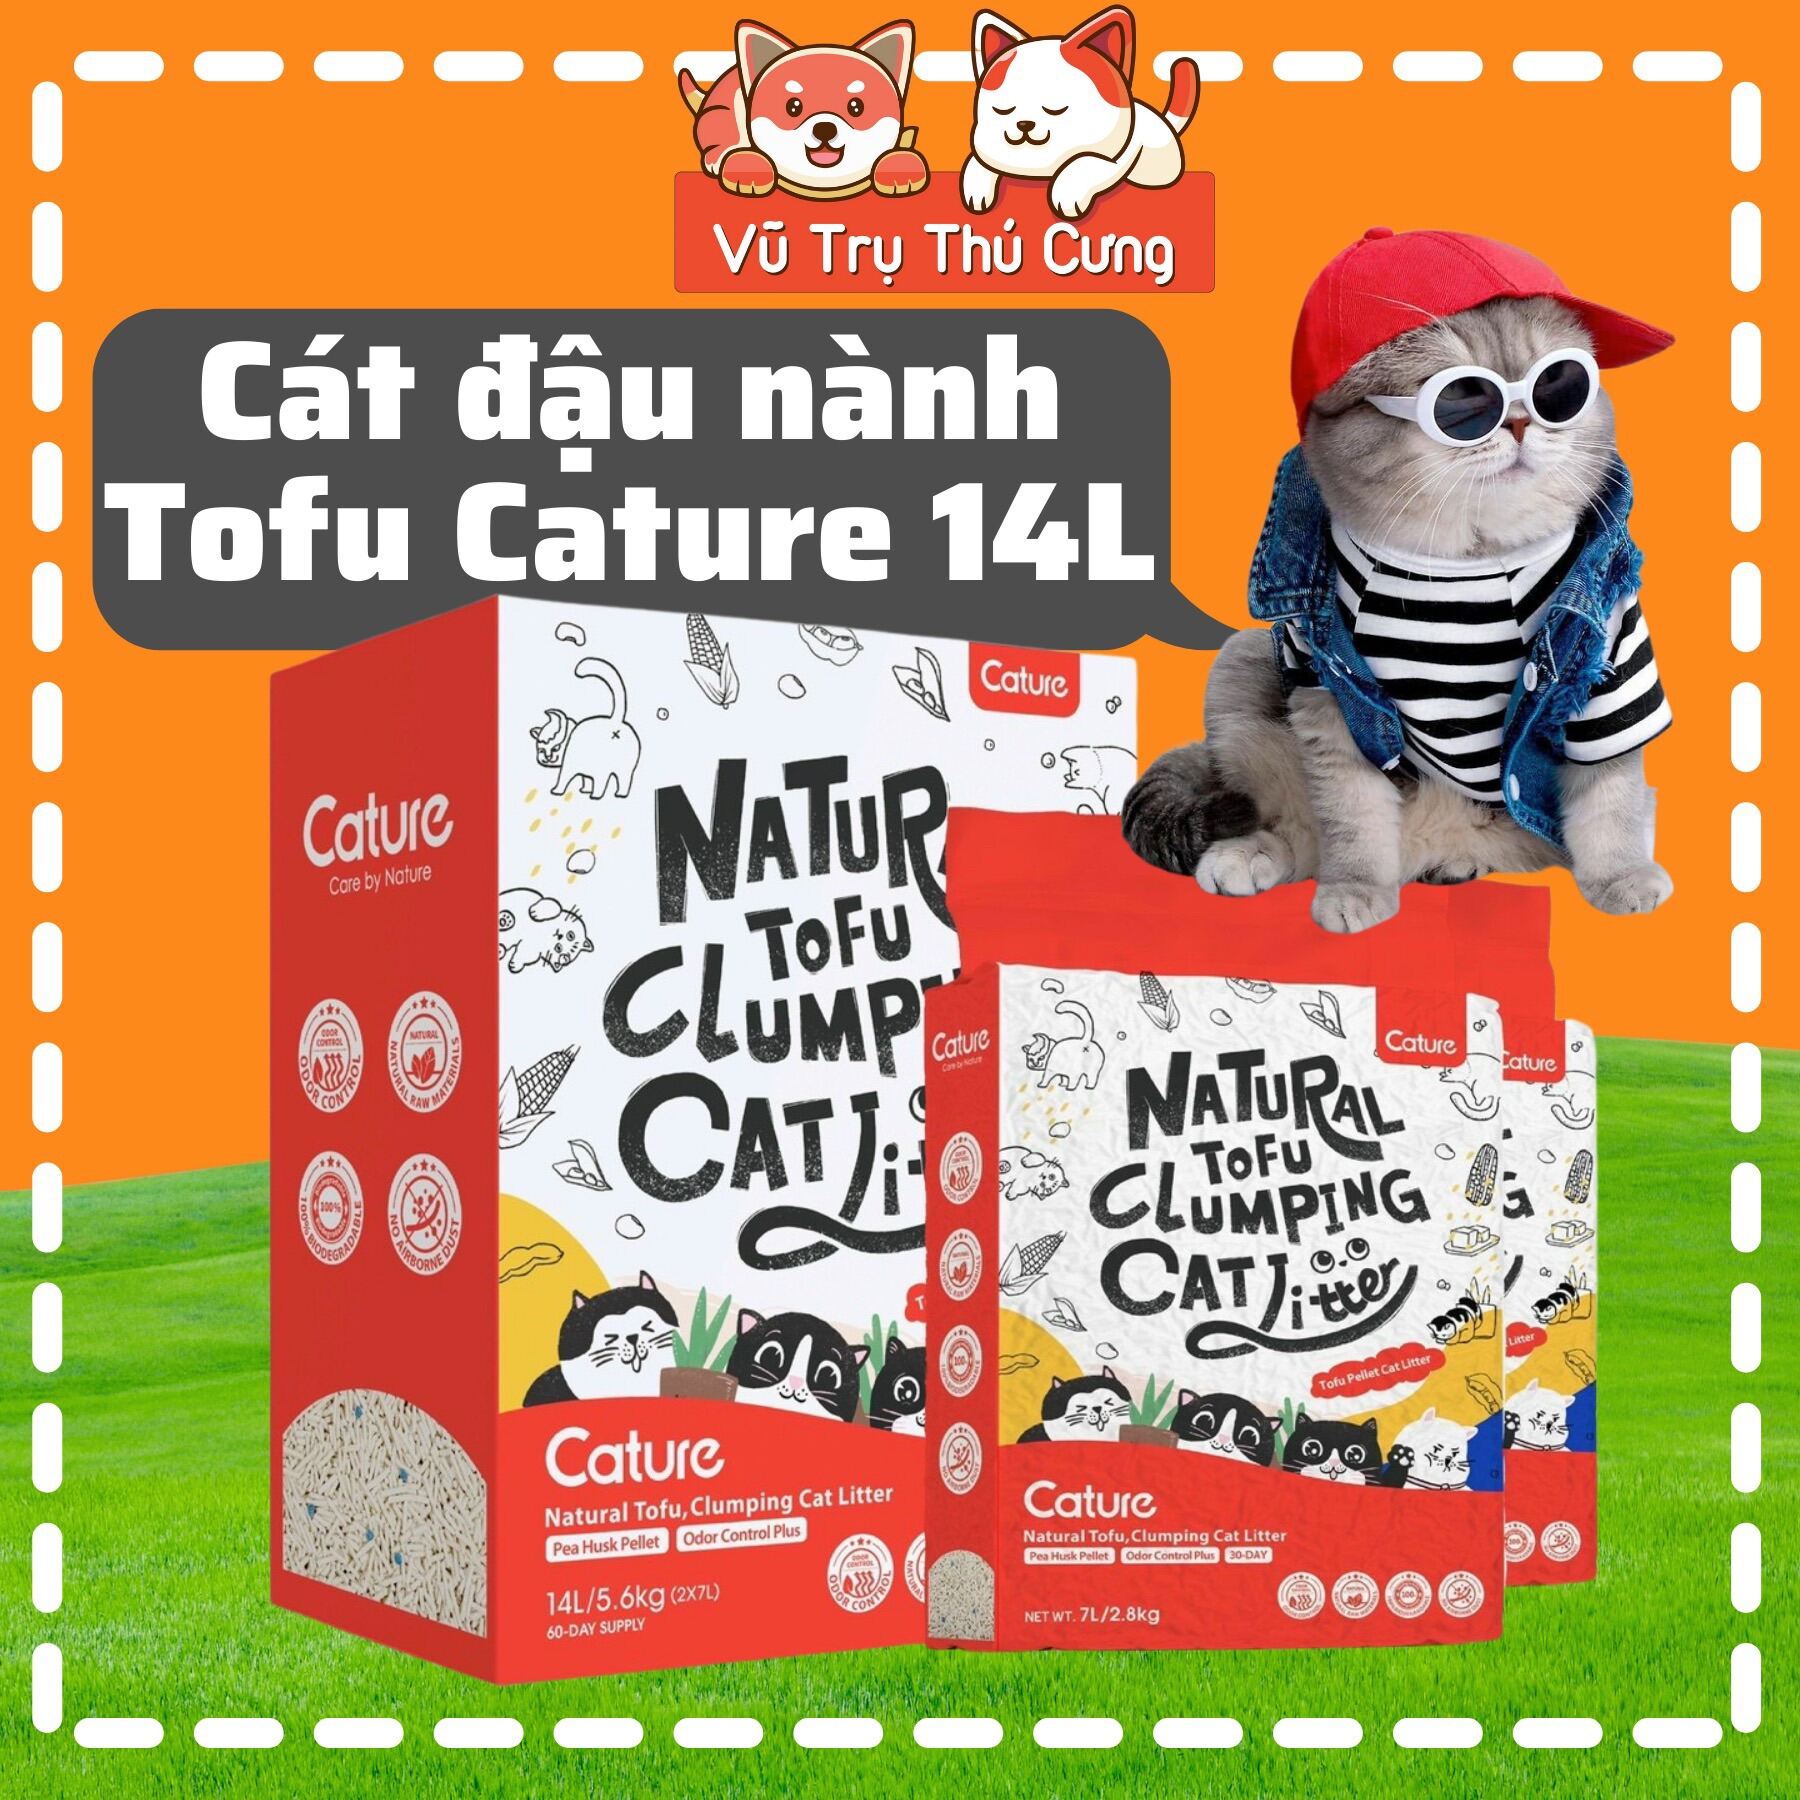 Cát vệ sinh cho Mèo, Cát đậu nành Tofu Cature 14L thumbnail